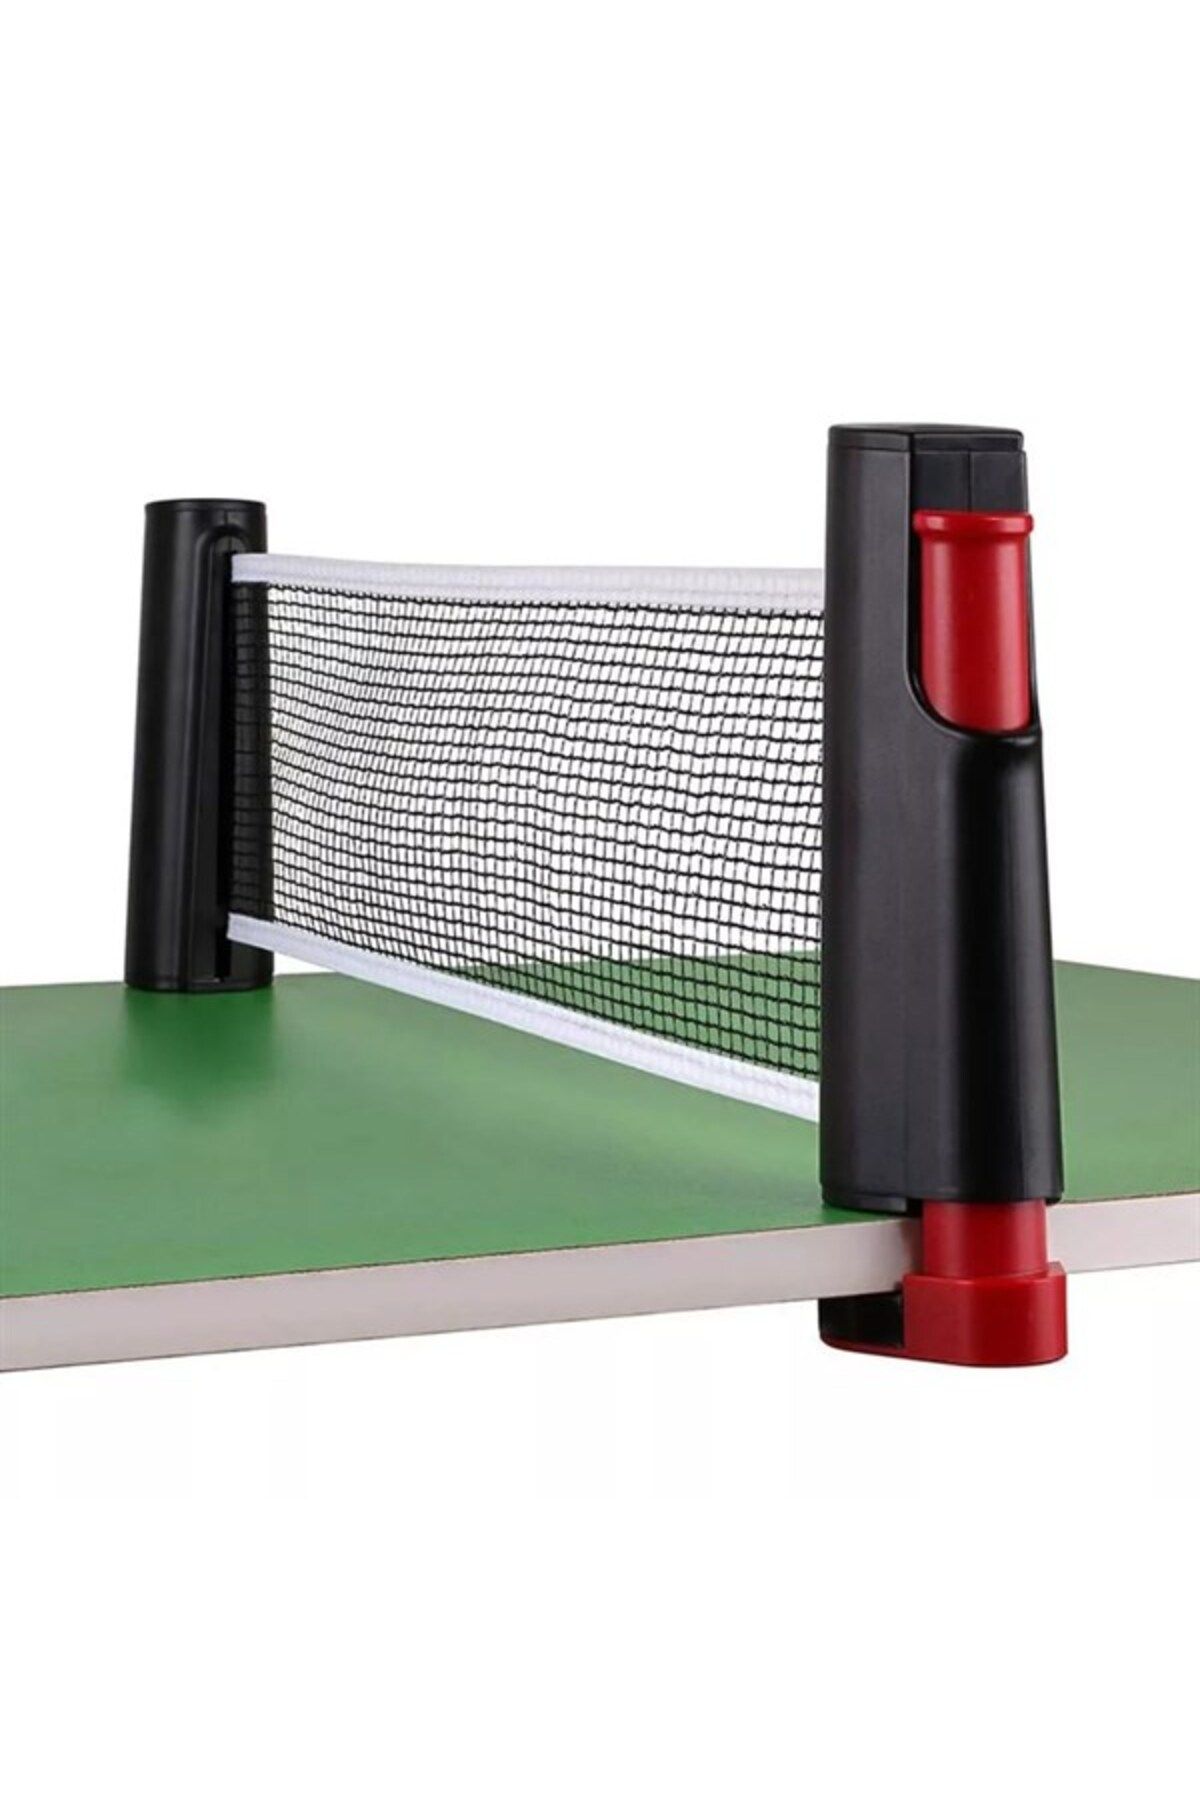 SANEC Teleskopik Taşınabilir Kaymaz Ping Pong Masa Tenisi Filesi Aparatı